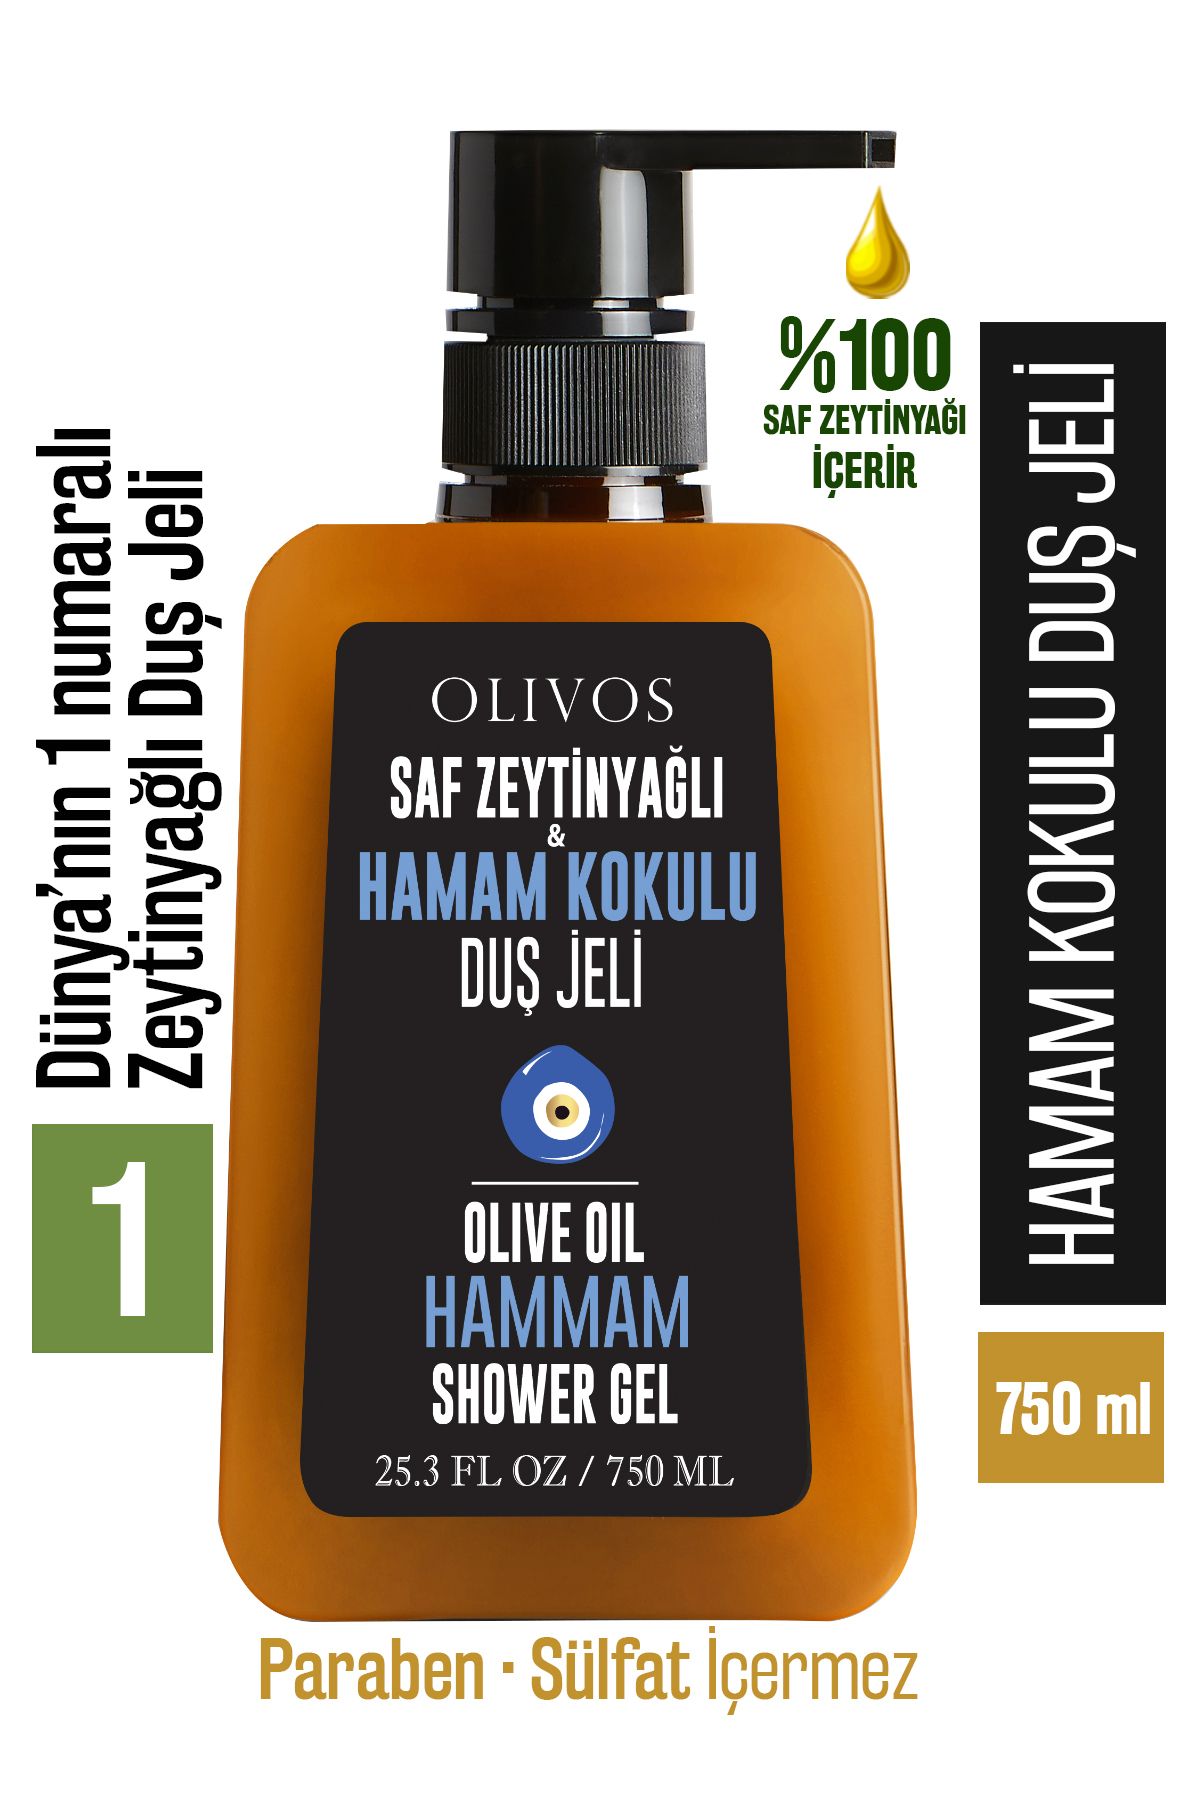 Olivos %100 Doğal Zeytinyağlı Hamam Kokulu Banyo Ve Duş Jeli Kuru Cilt Nemlendirici Ve Besleyici 750 ml